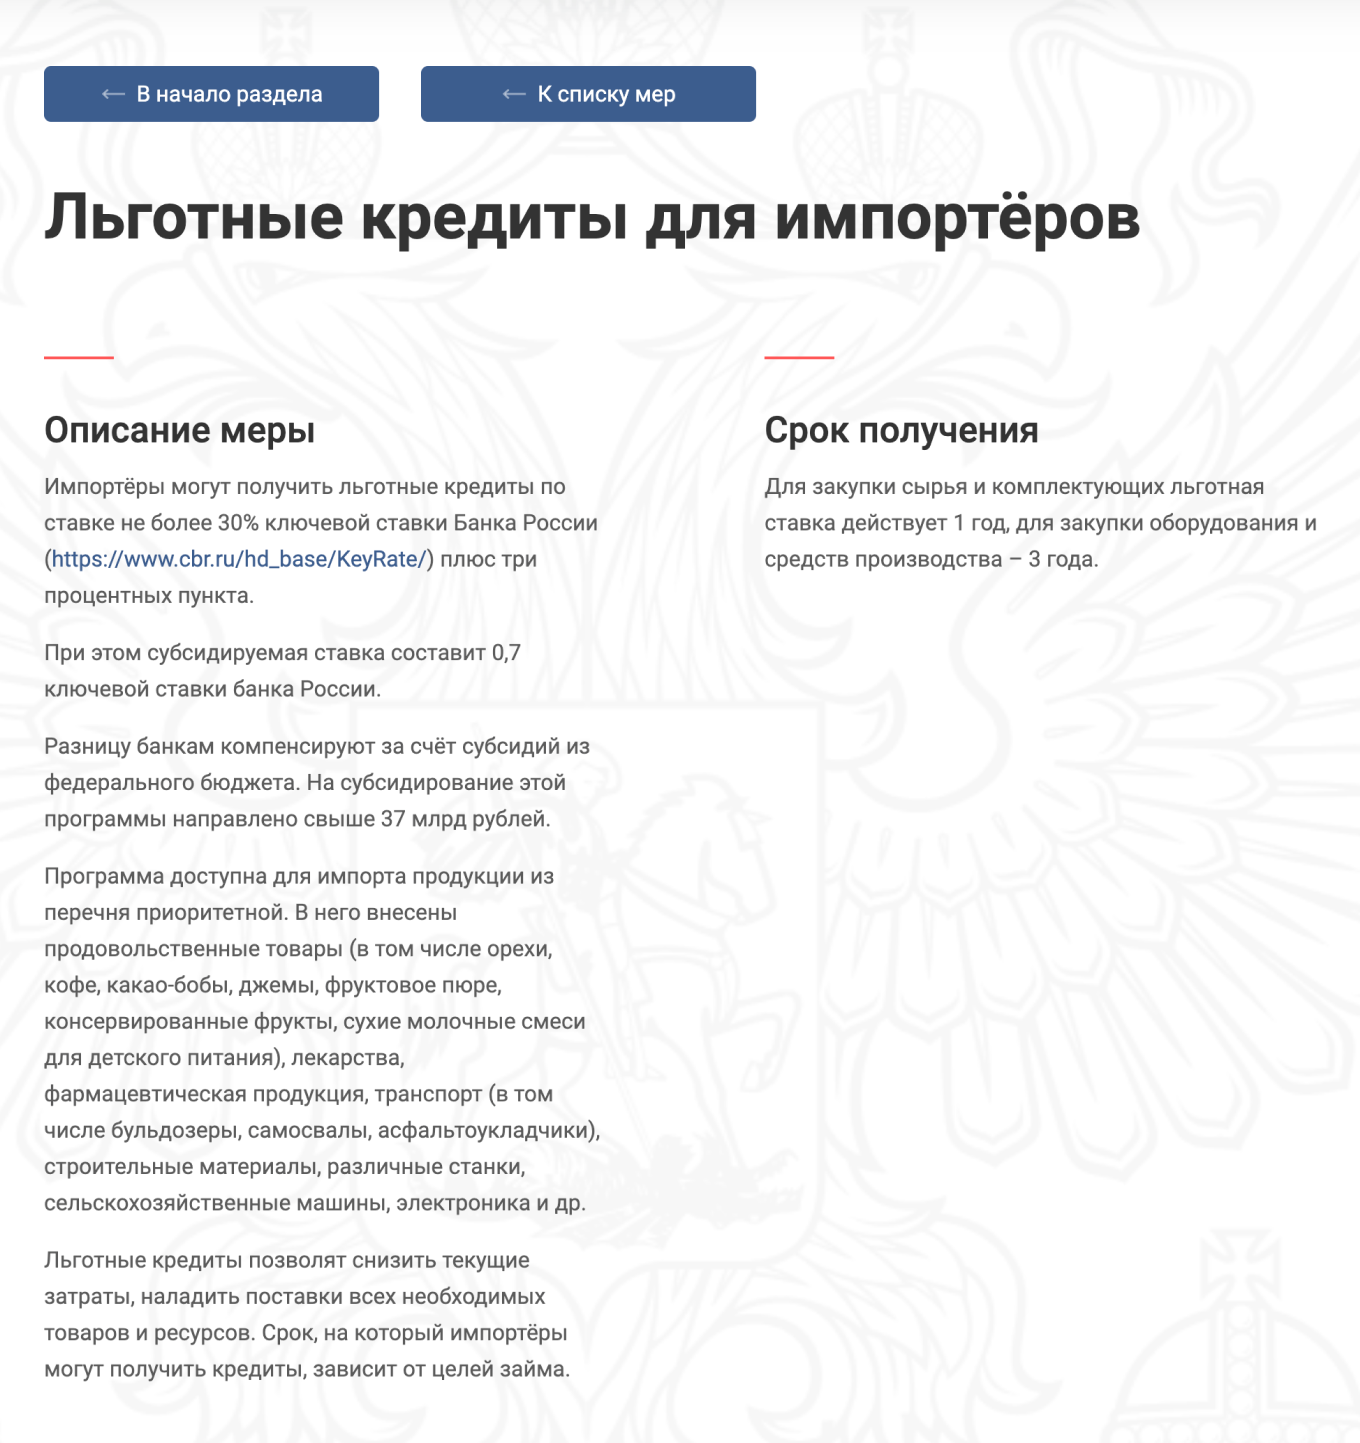 Поддержка для импортеров на сайте правительства в России